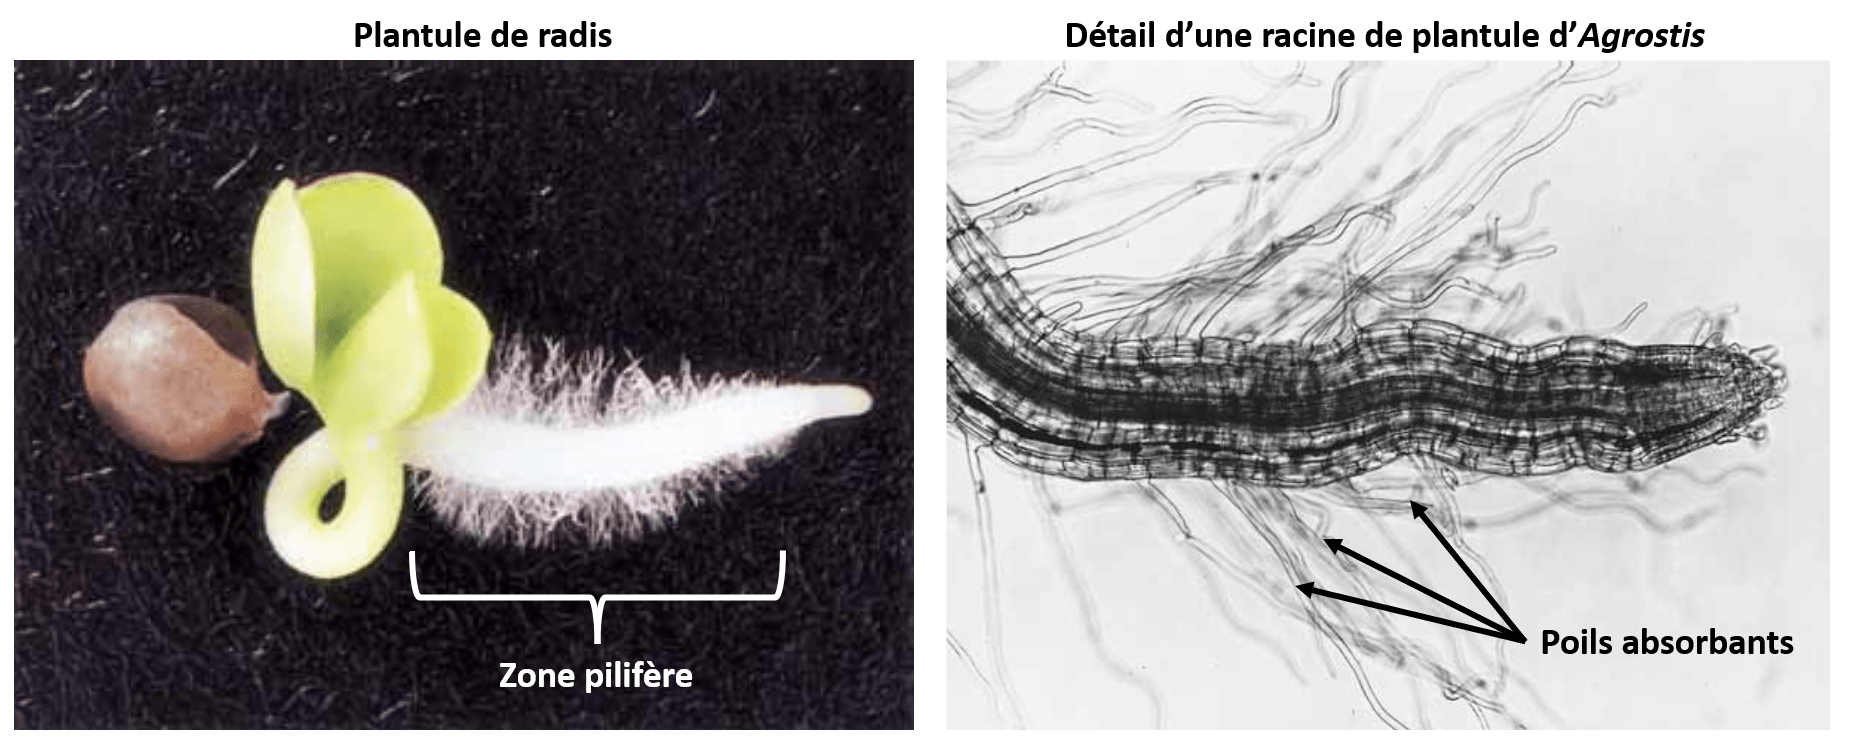 La zone pilifère portant les poils absorbants. les poils absorbants sont des cellules uniques dérivées des cellules du rhizoderme.